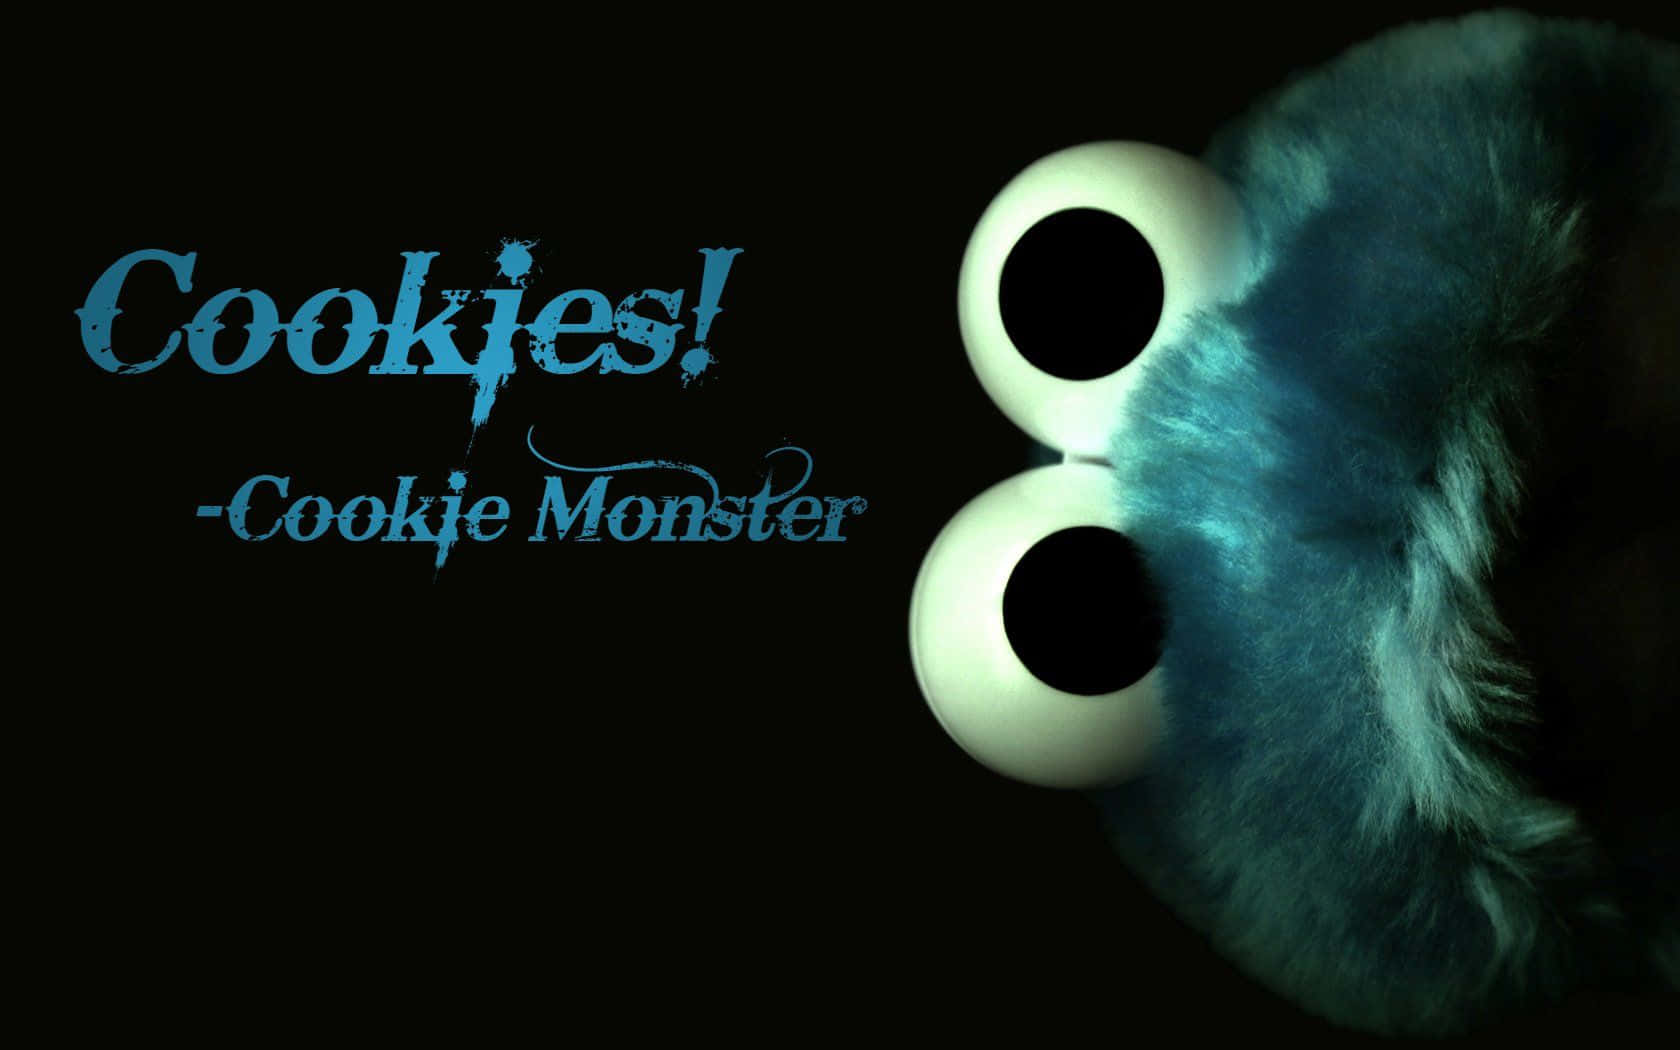 Cheerful Cookie Monster enjoying his favorite snack